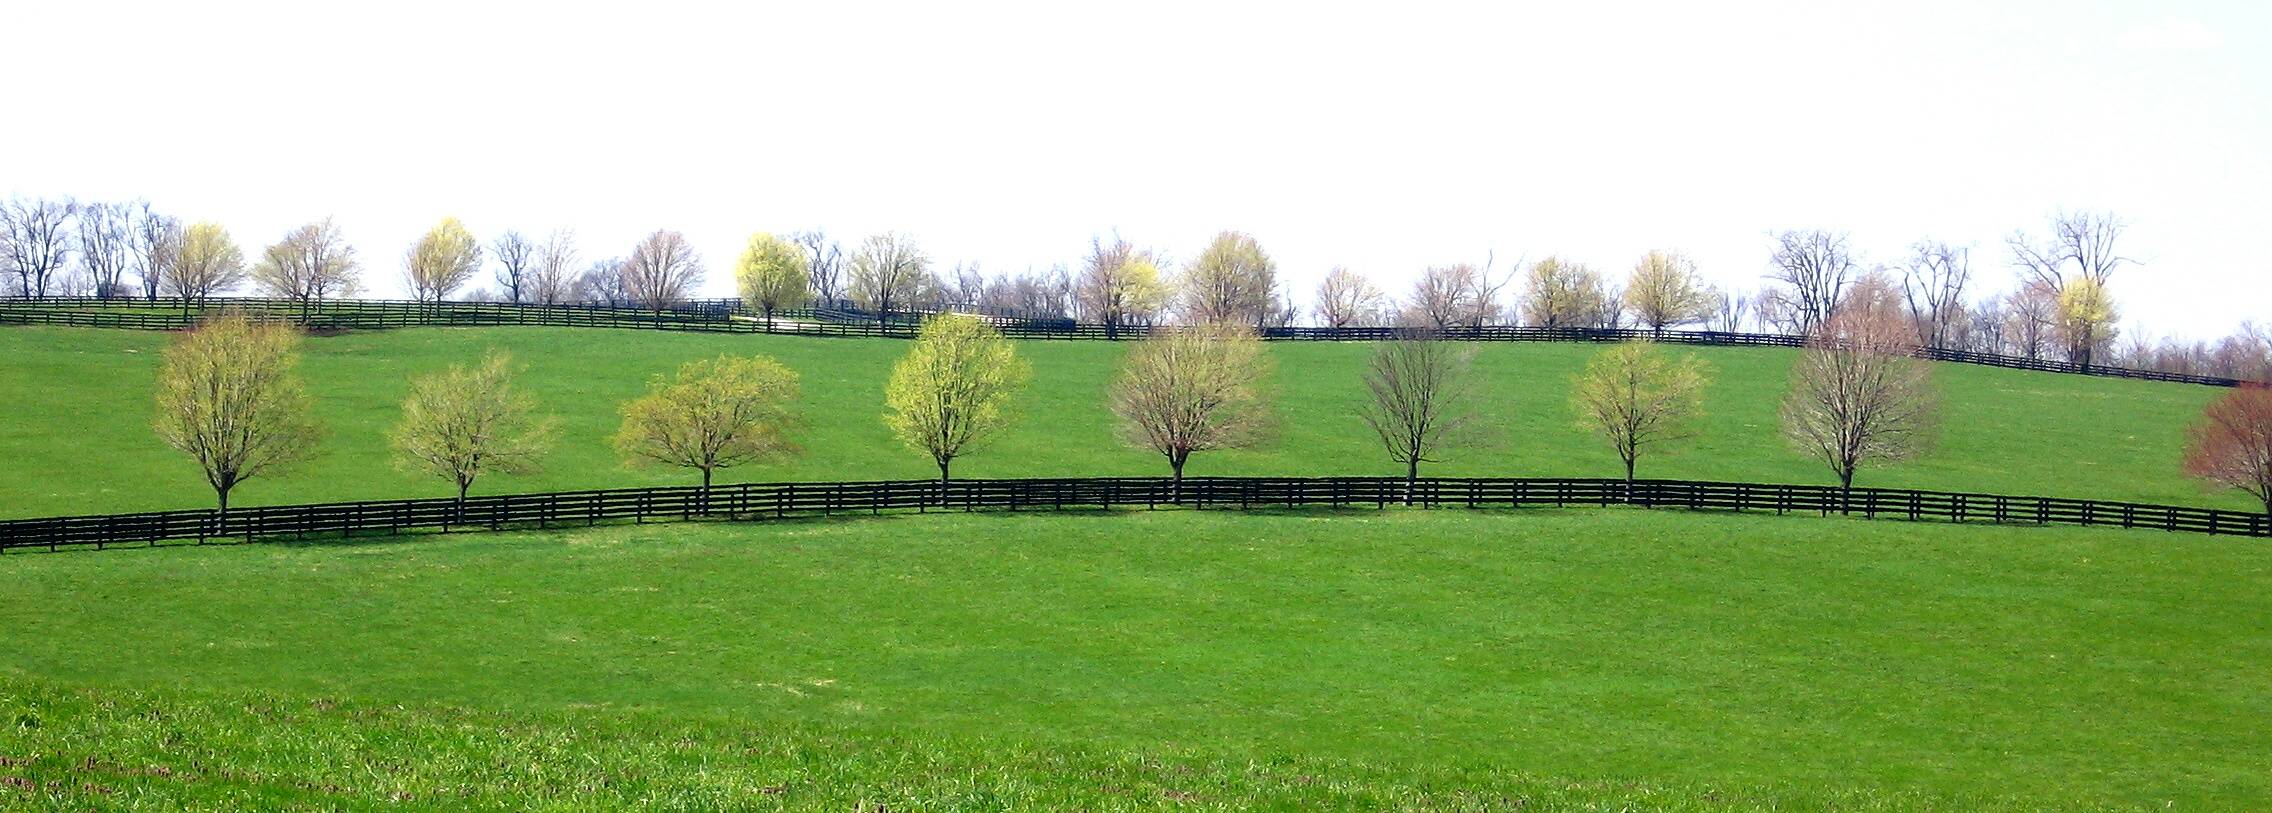 Bluegrass Kentucky landscape